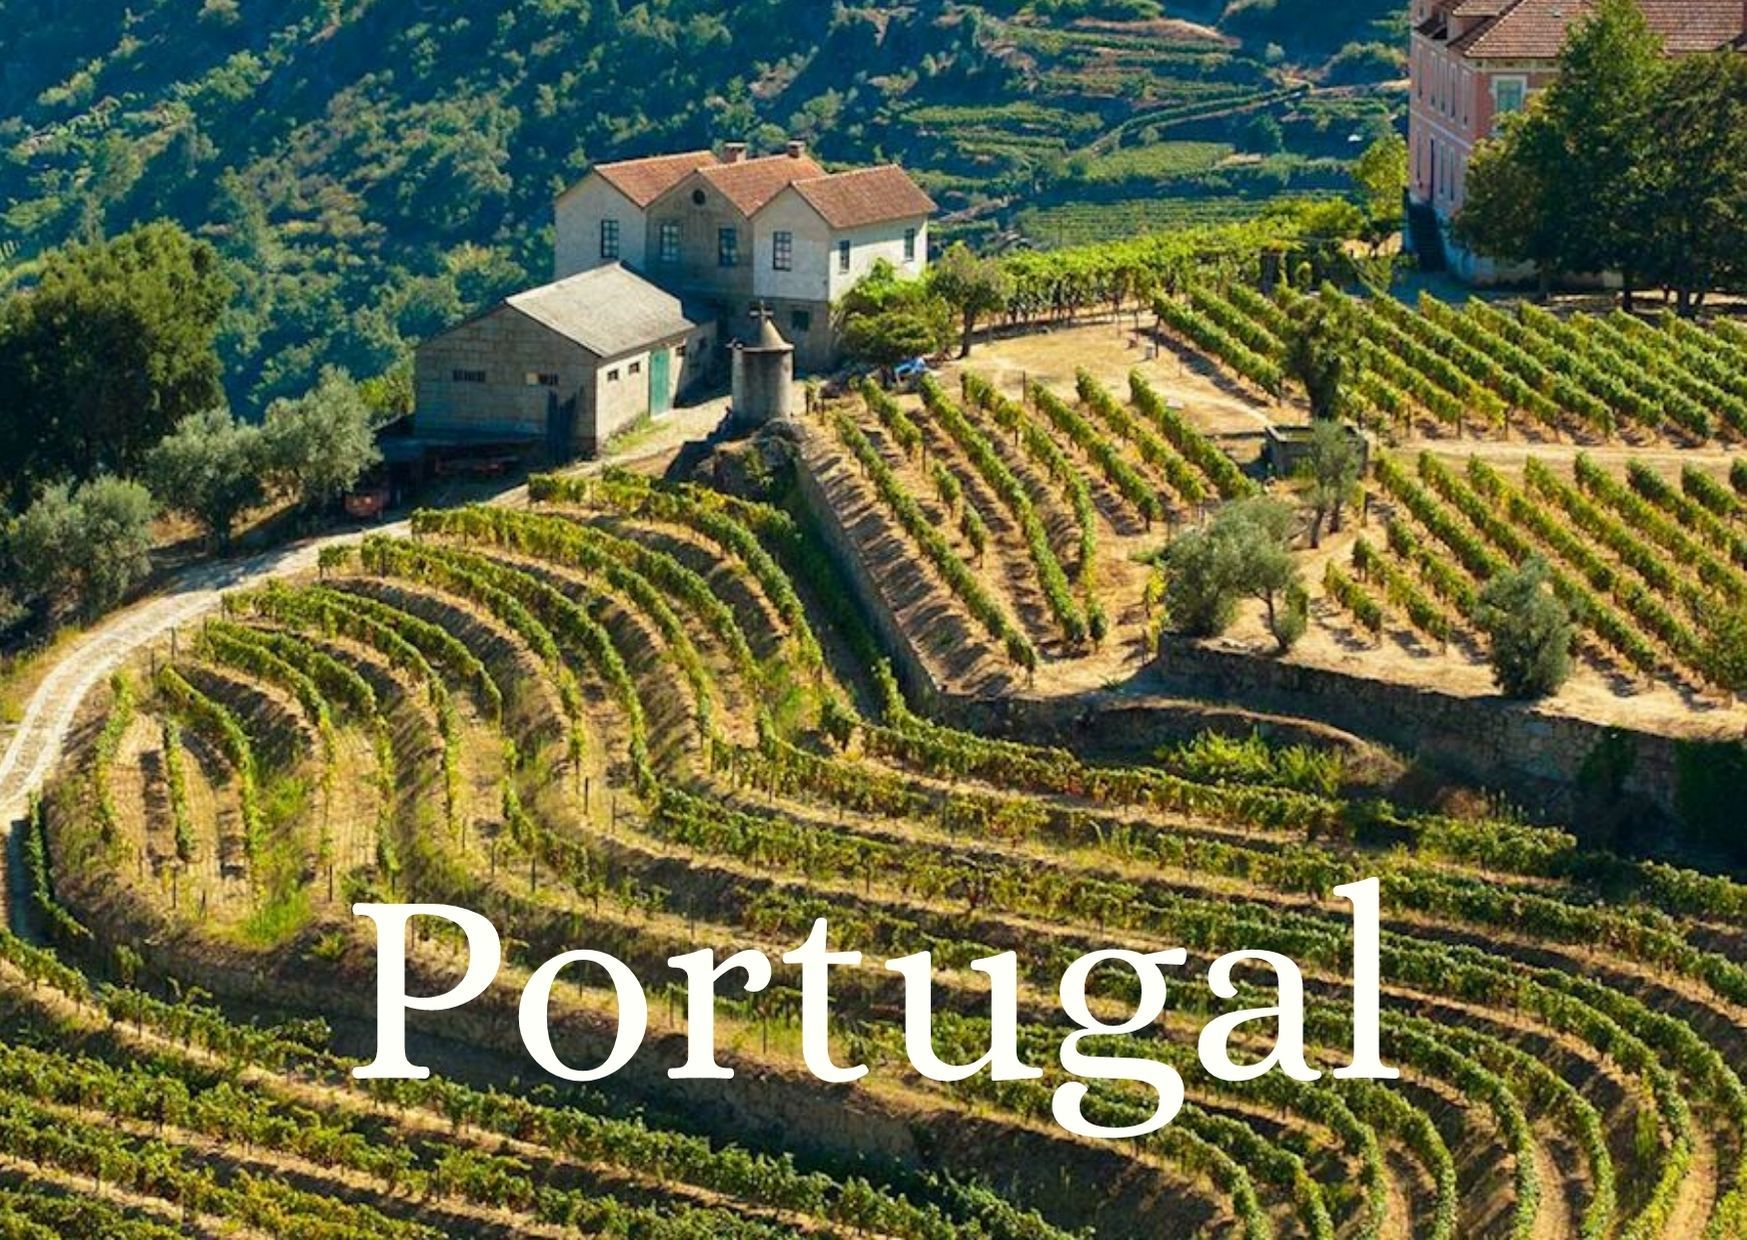 Online Tasting Wines of Portugal - 3 Full Bottles Delivered